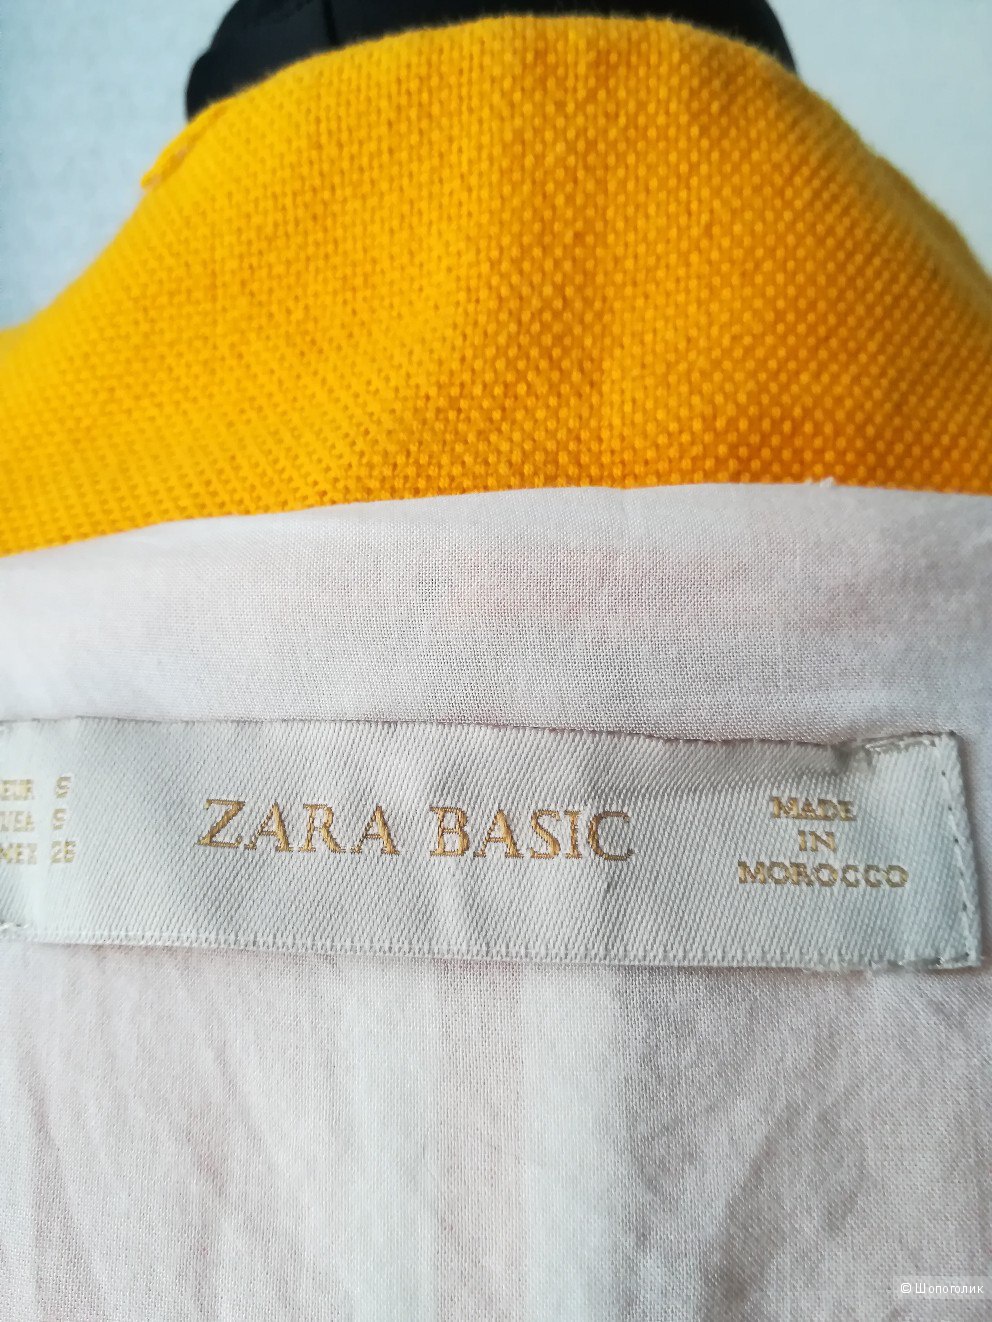 Пальто Zara, размер s/m